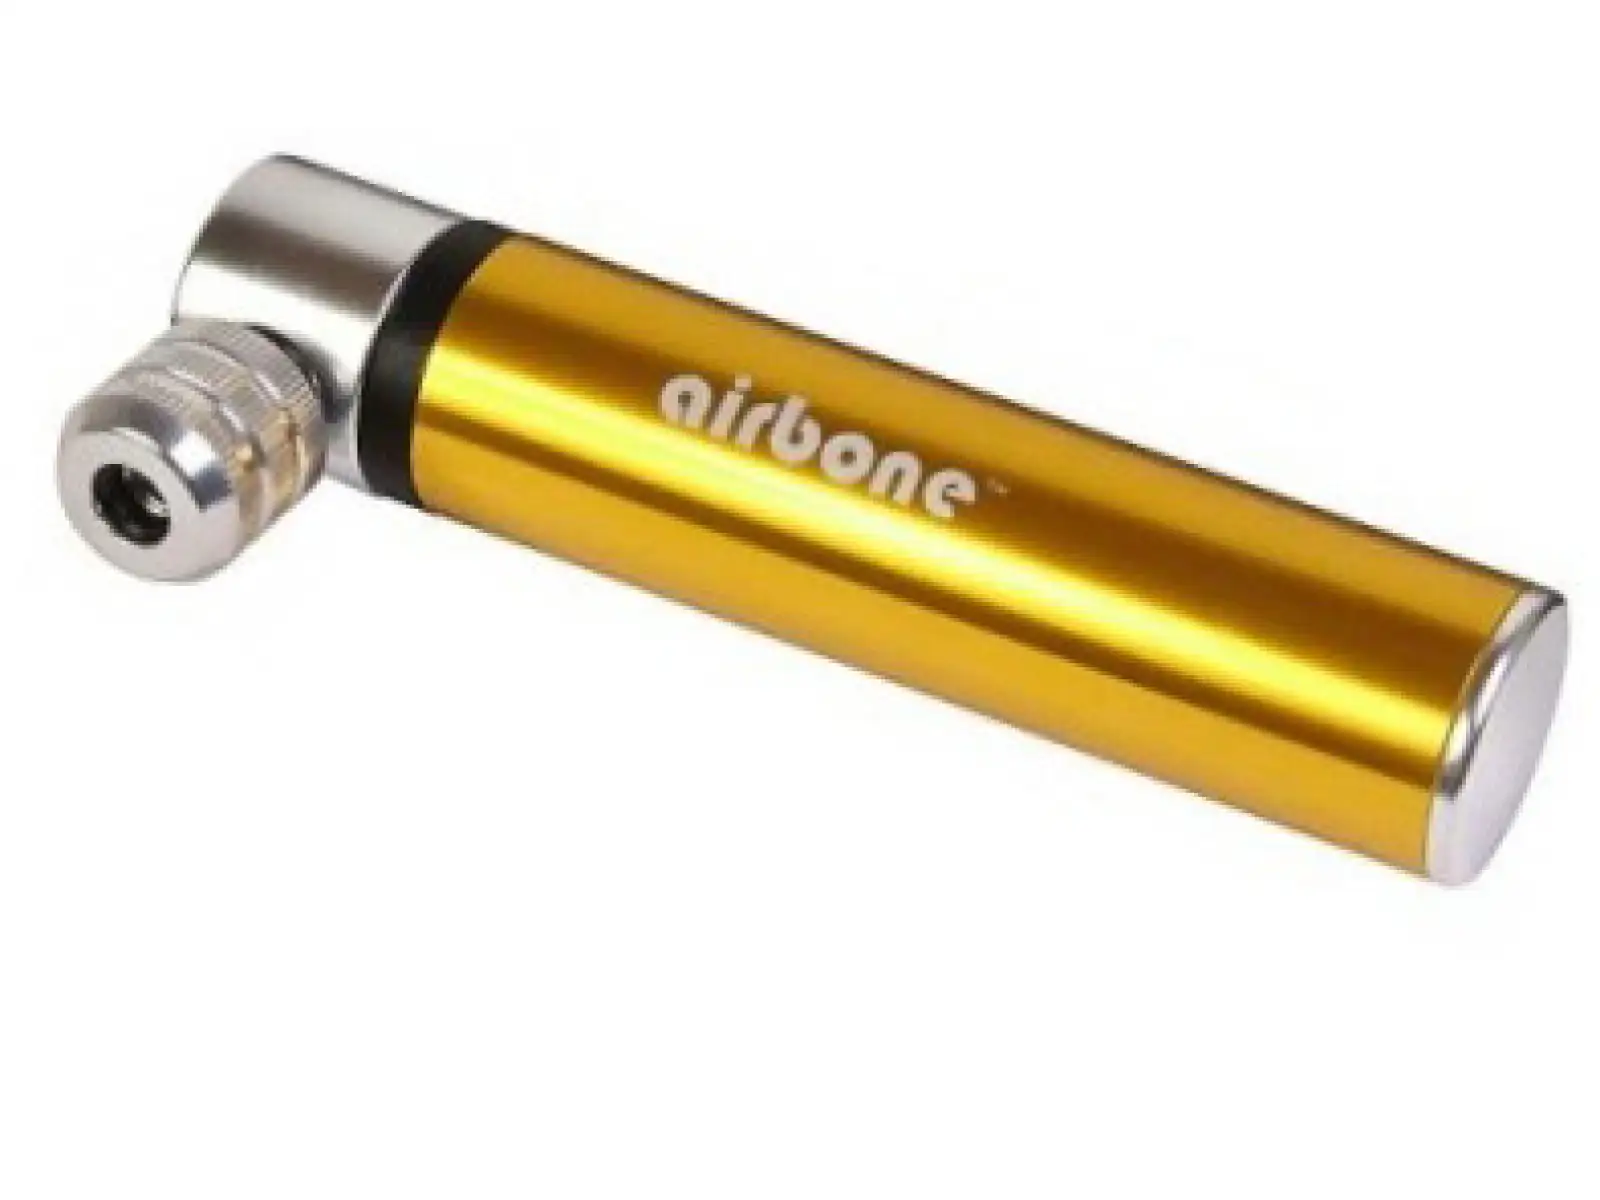 Airbone 59g mini pumpa